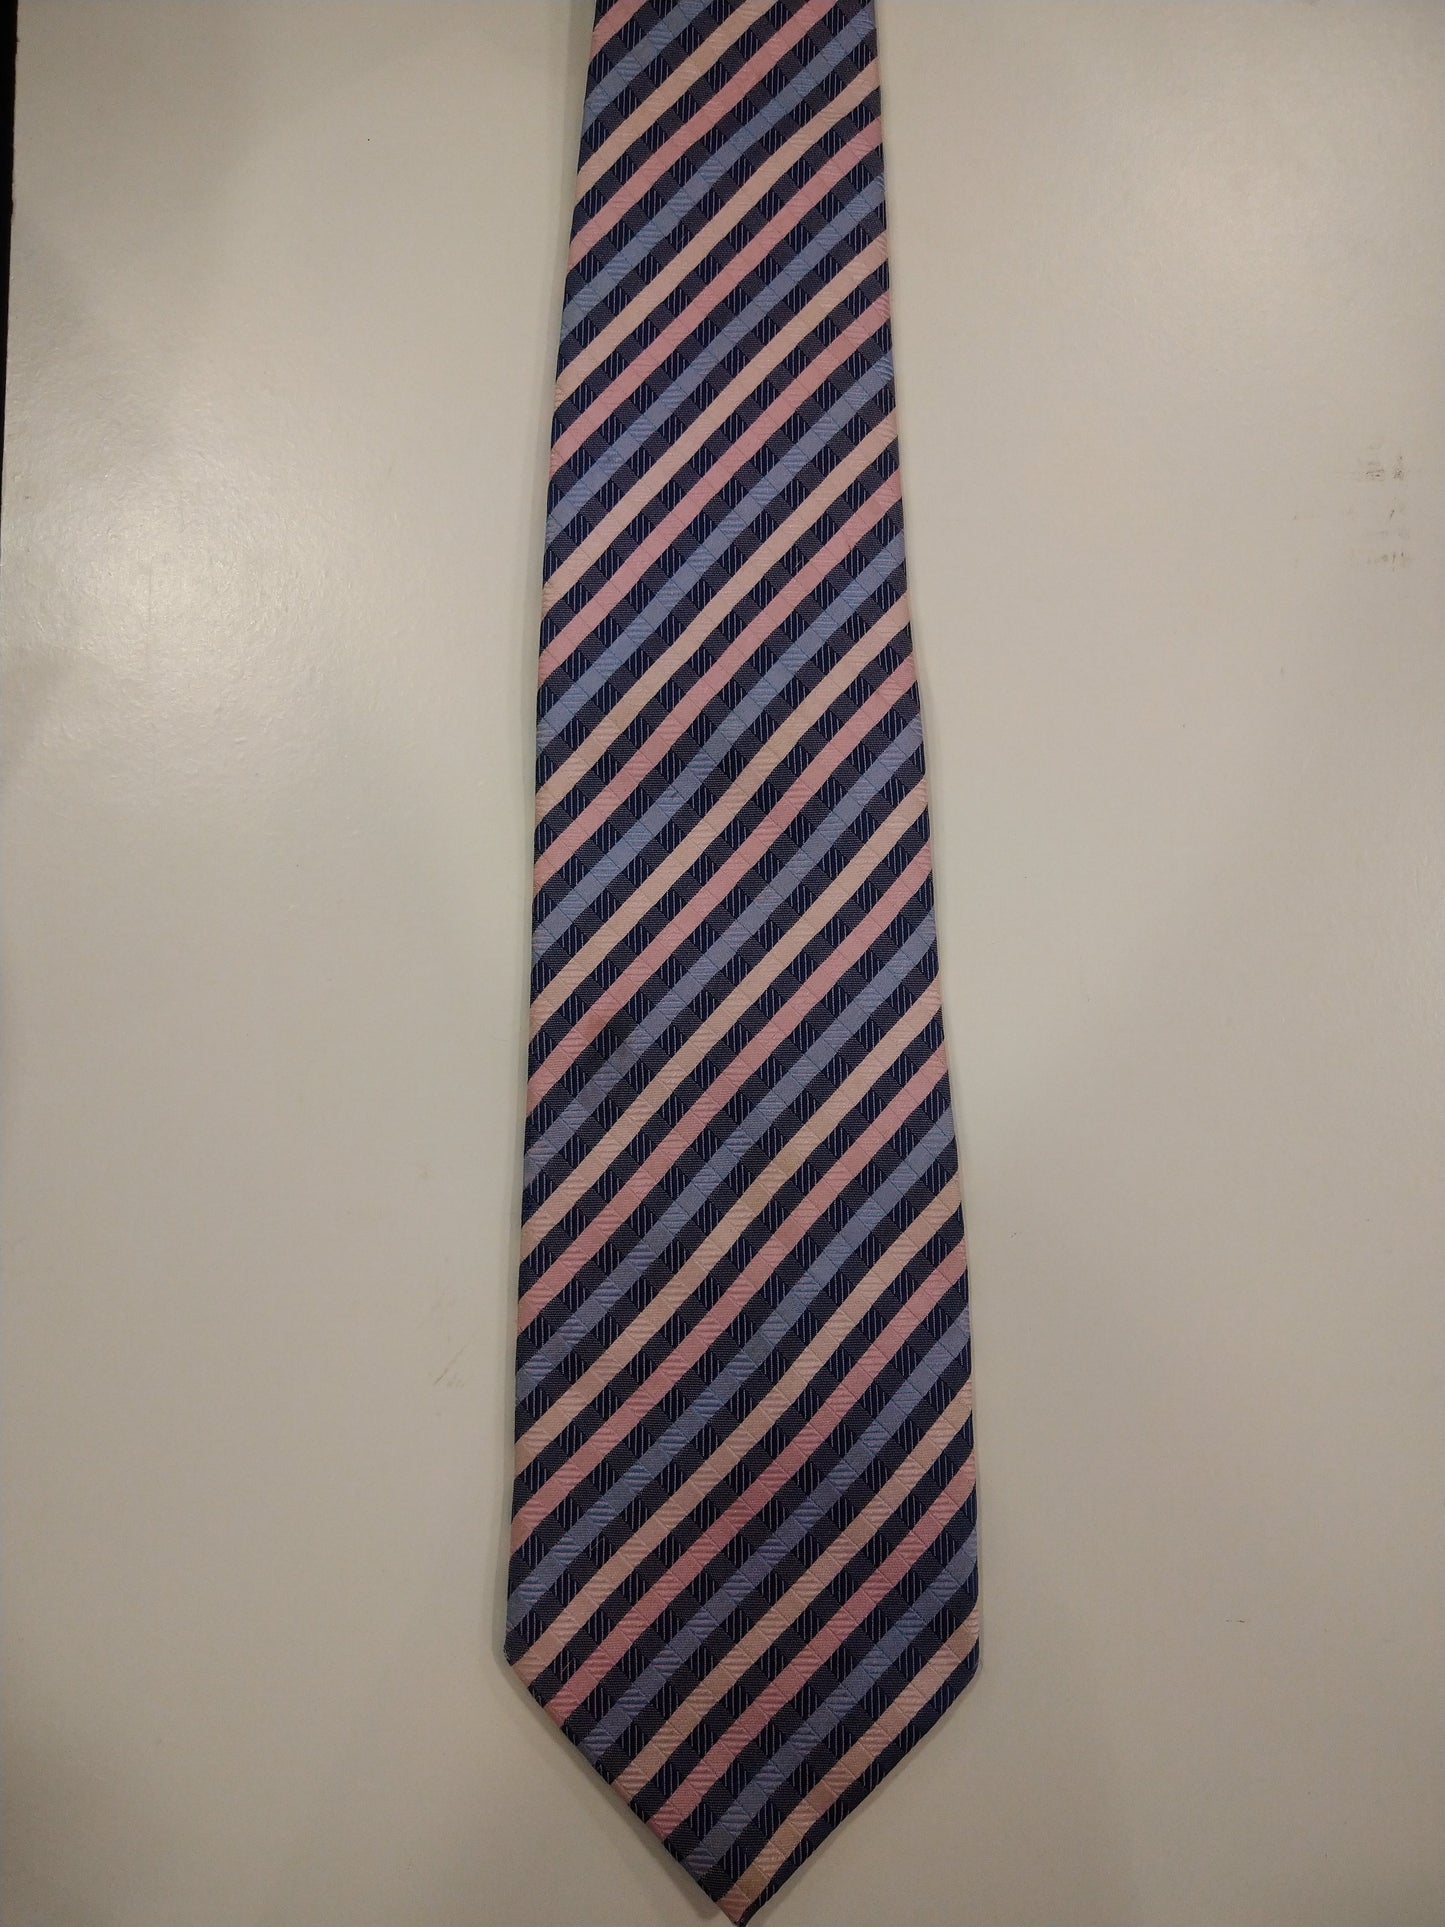 Zijde stropdas. Roze blauw zalm gestreept.